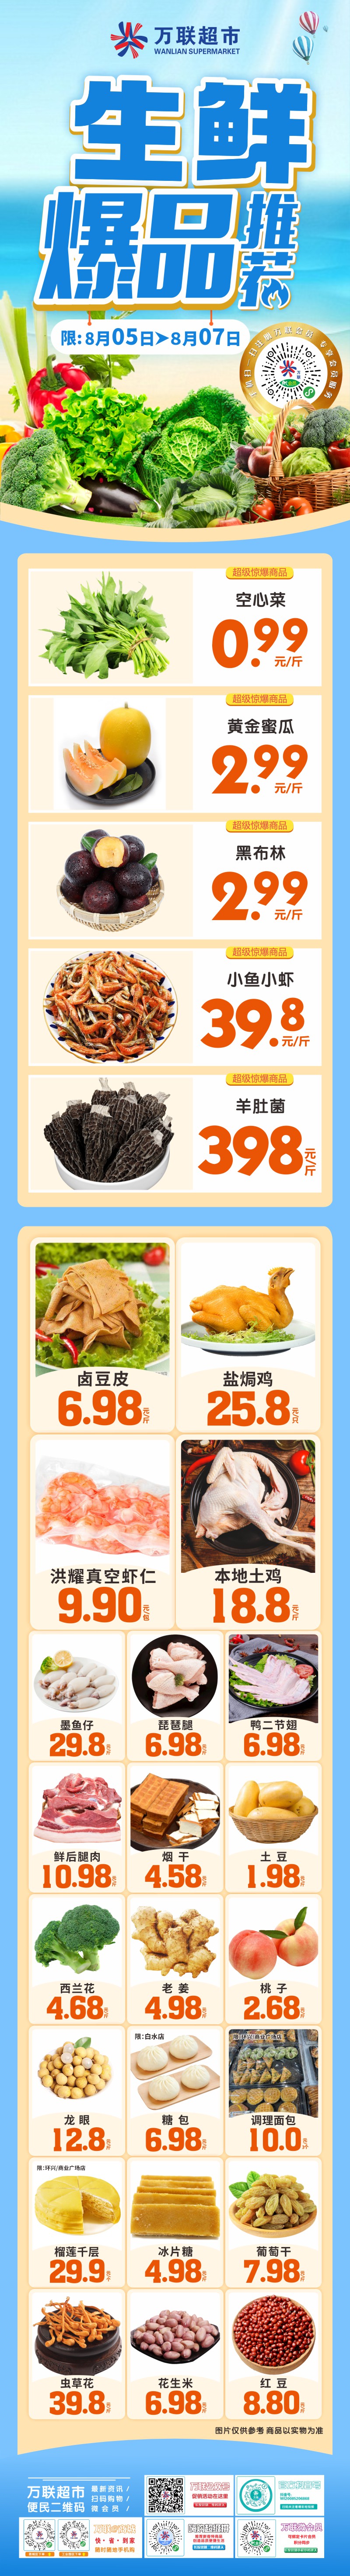 【万联超市】生鲜爆品推荐,空心菜0.99元/斤,黄金蜜瓜2.99元/斤,黑布林2.99/斤,更多优